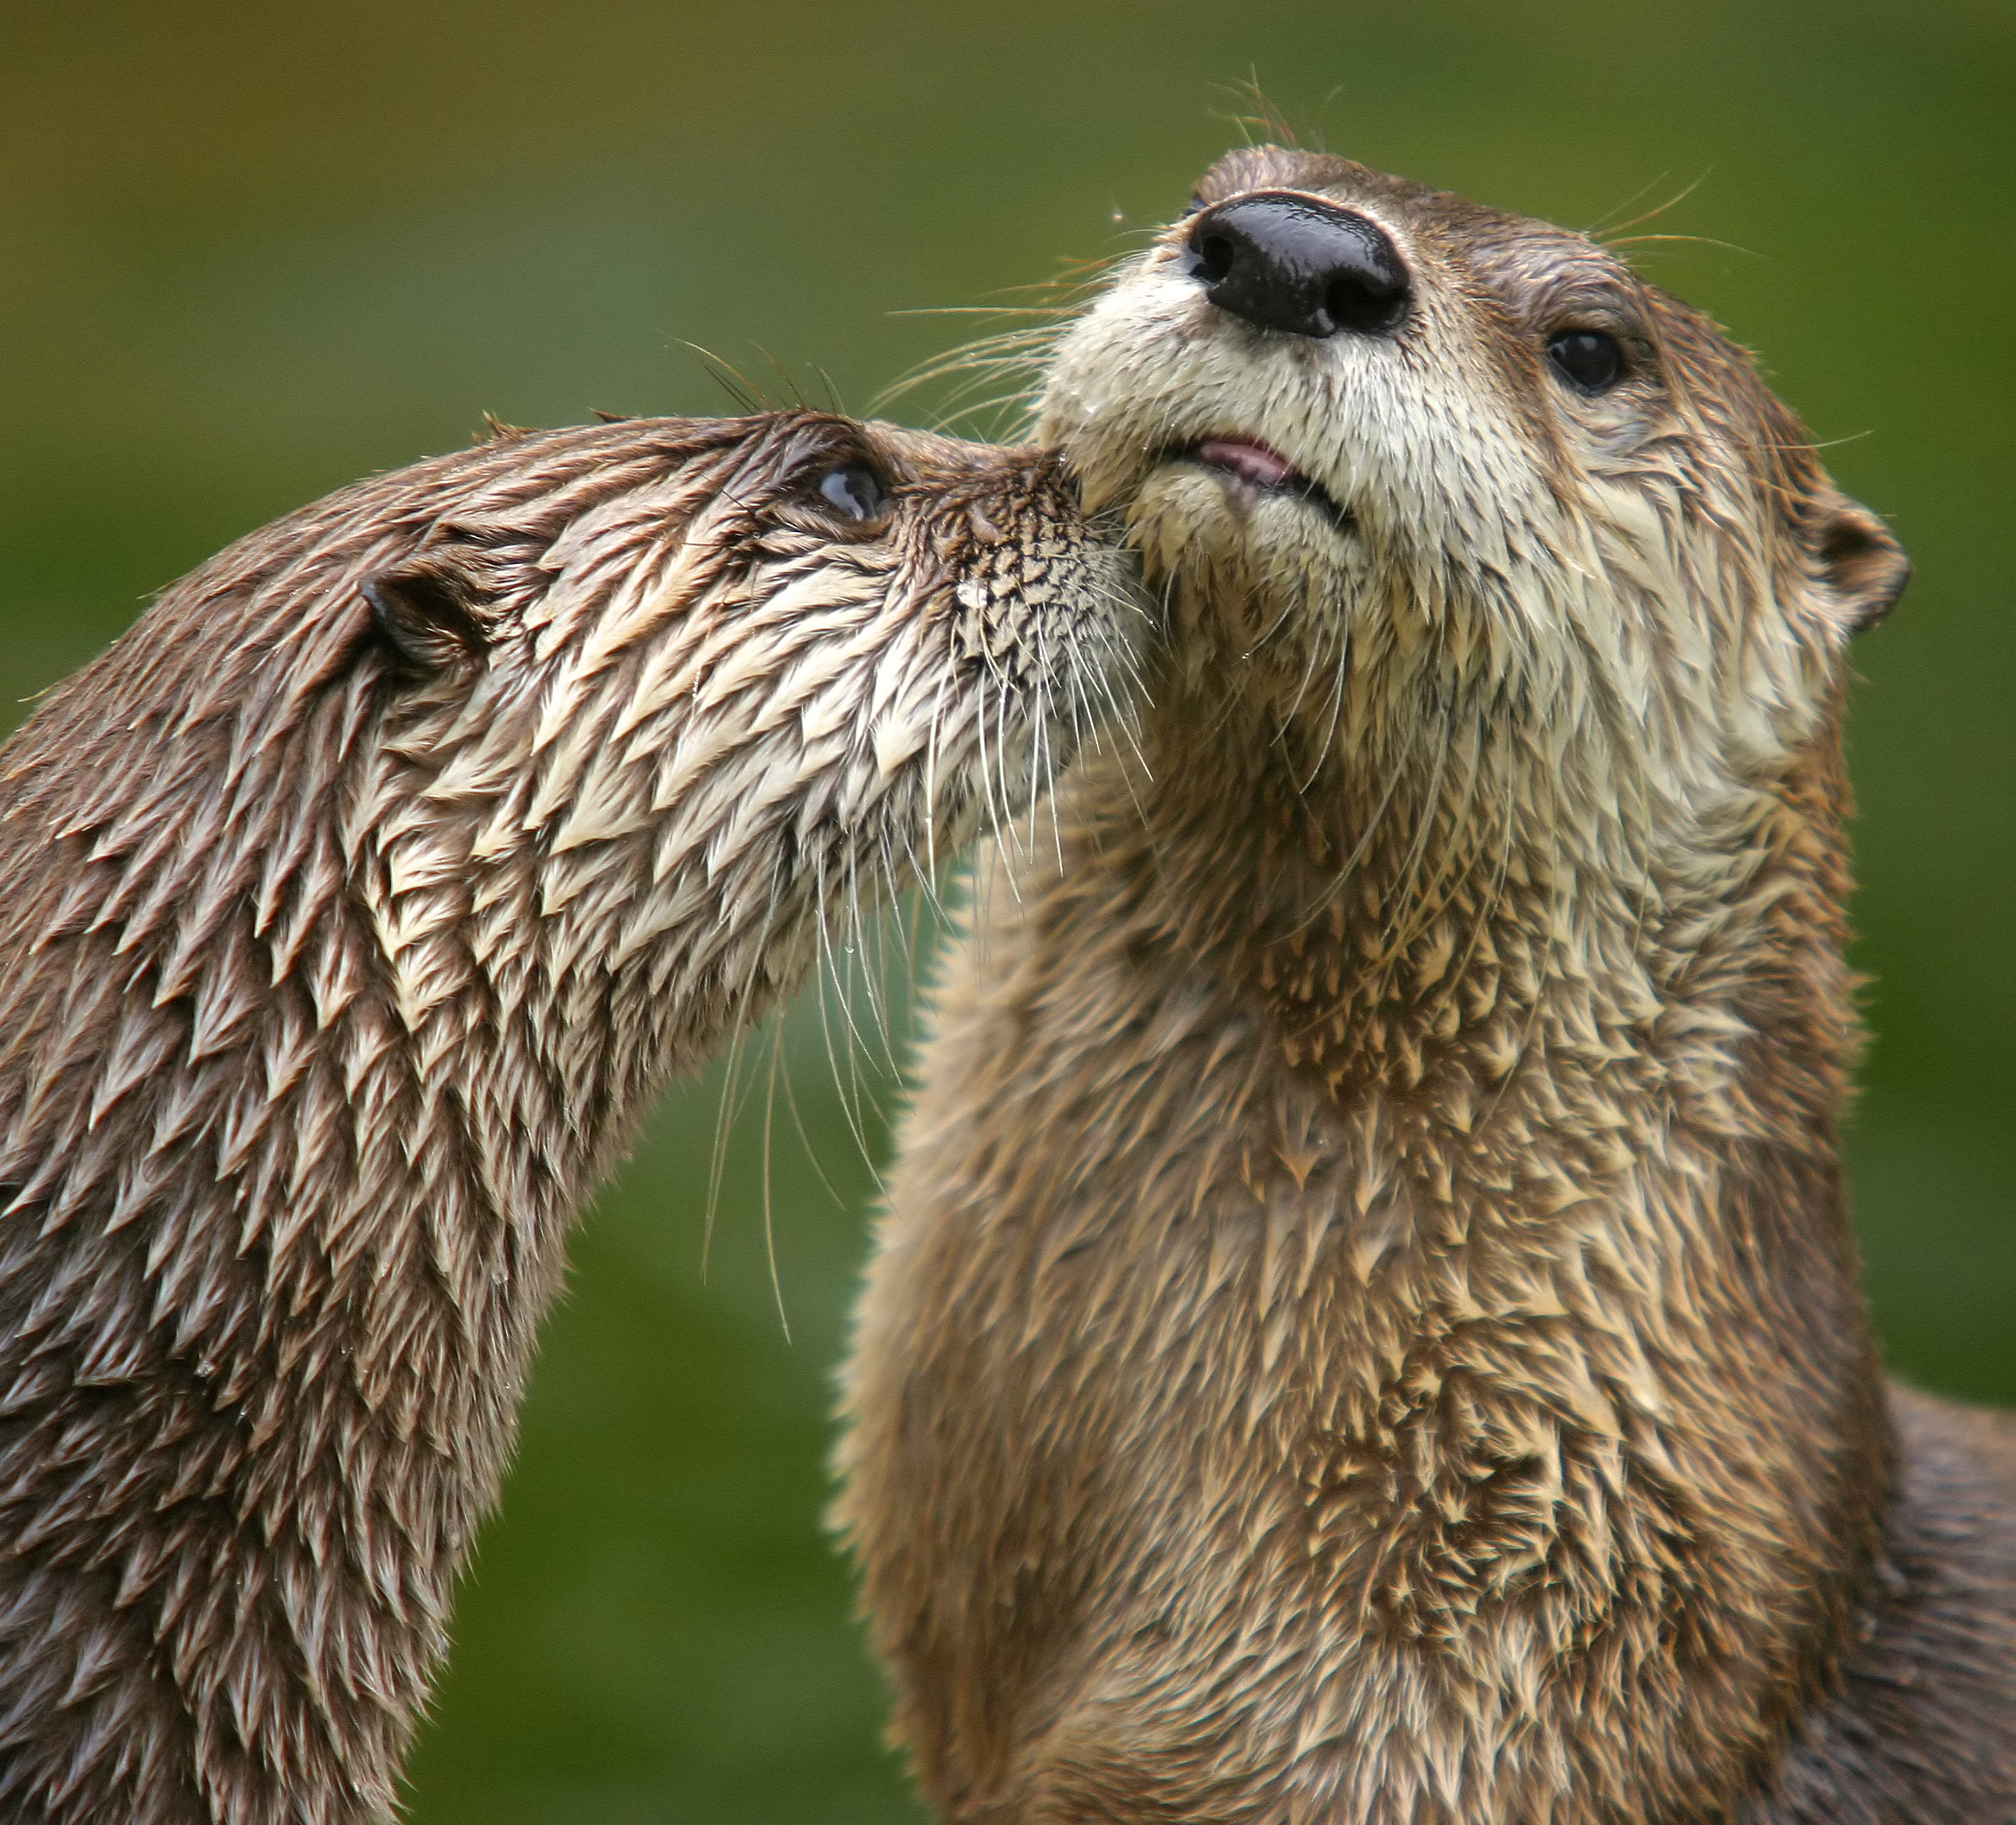 Otter - Wikipedia